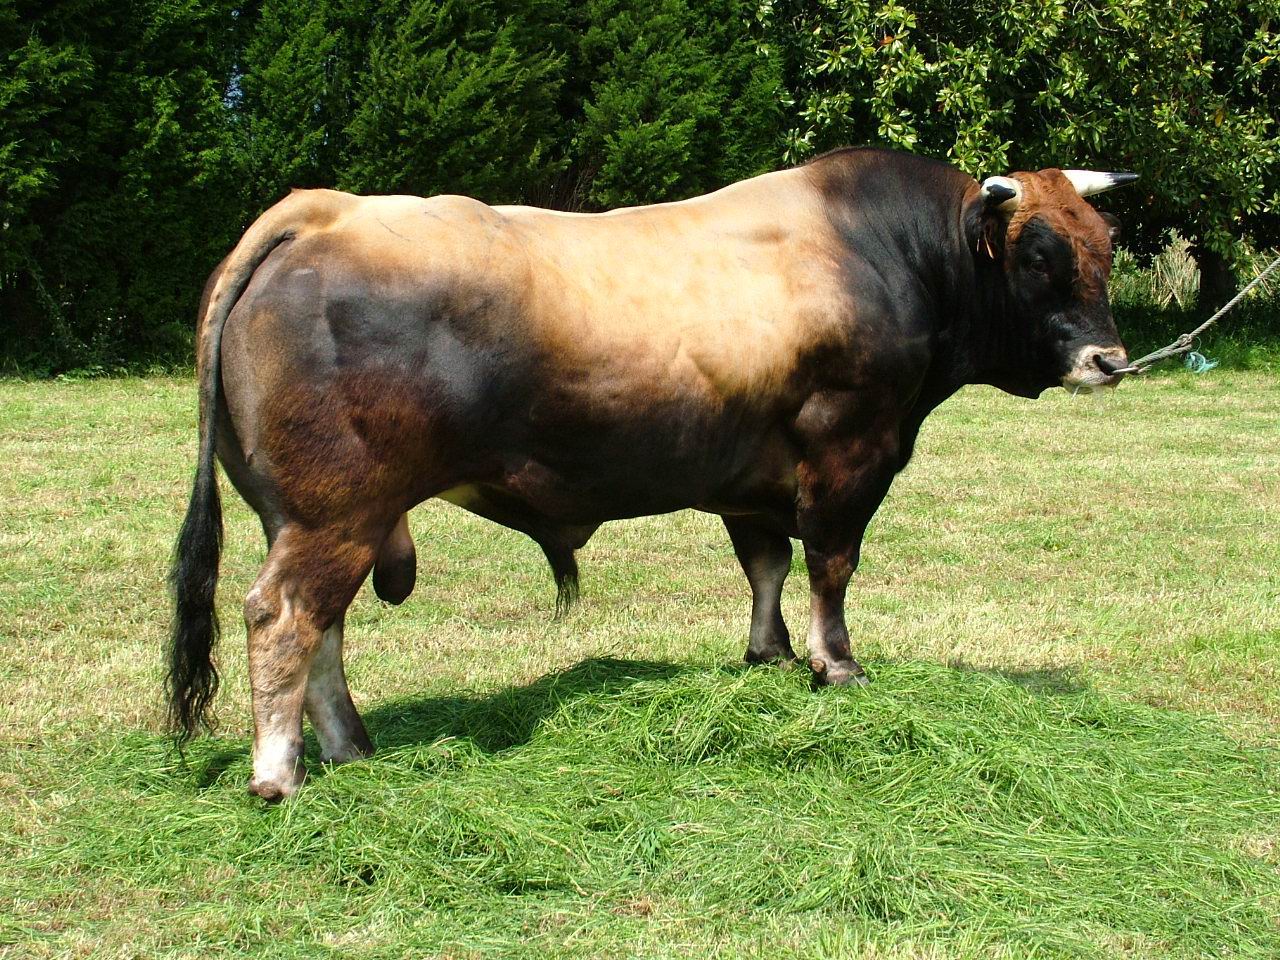 Autor: ASEAVA
Año: 2004
Sexo: Macho
Comentario: Los toros de la raza Asturiana de los Valles se utilizan para aportar muscularidad a la descendencia y aumentar la calidad sensorial de la carne.